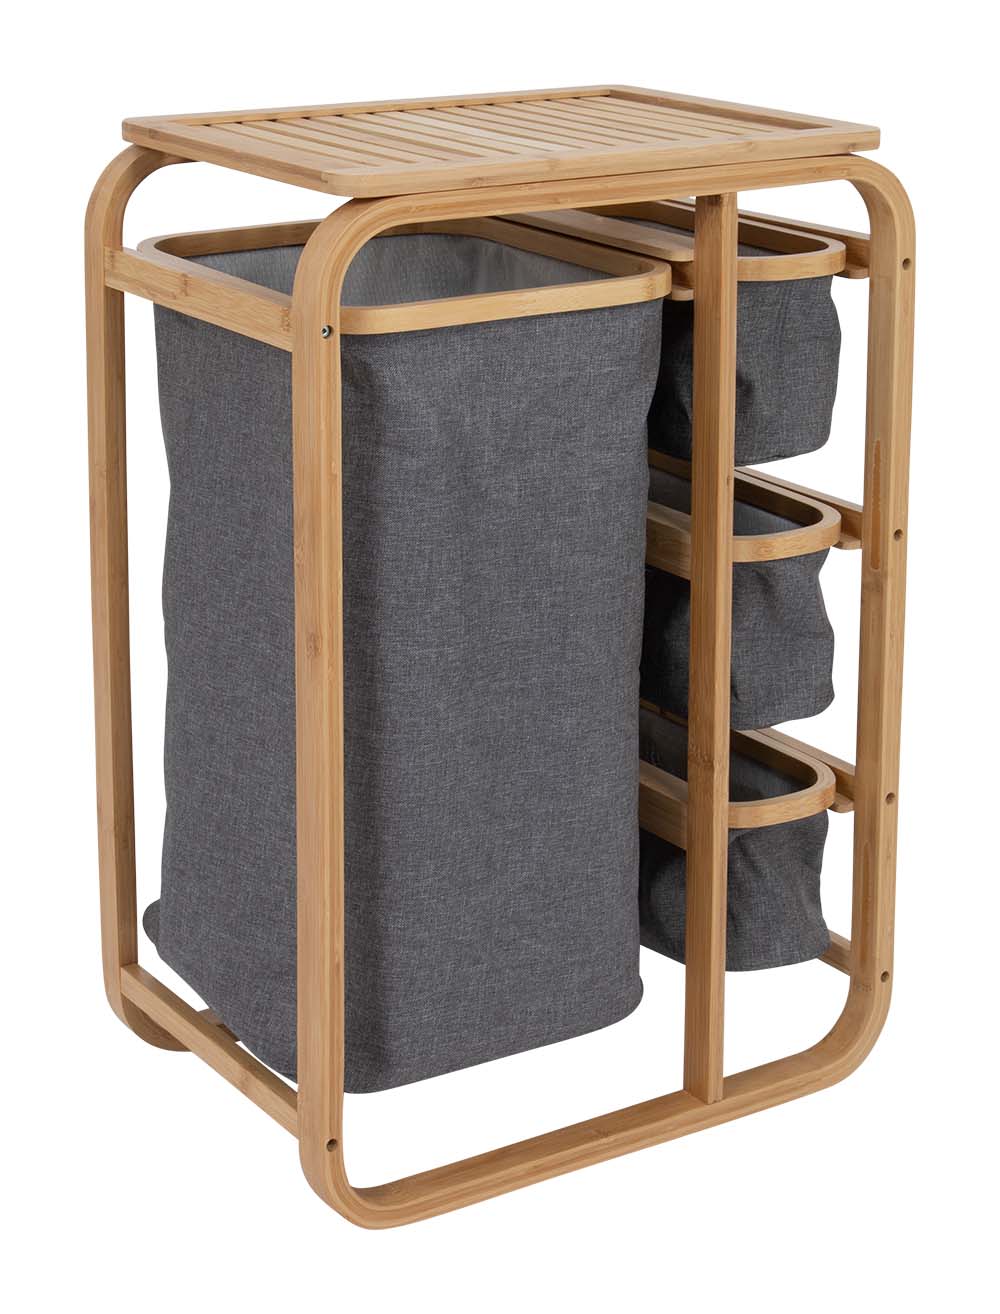 1609327 Un elegante mueble de la Urban Outdoor collection. El armario cuenta con una robusta estructura de bambú con una parte superior estable. El mueble incluye 4 cestas extensibles. Ideal para camping o uso doméstico.